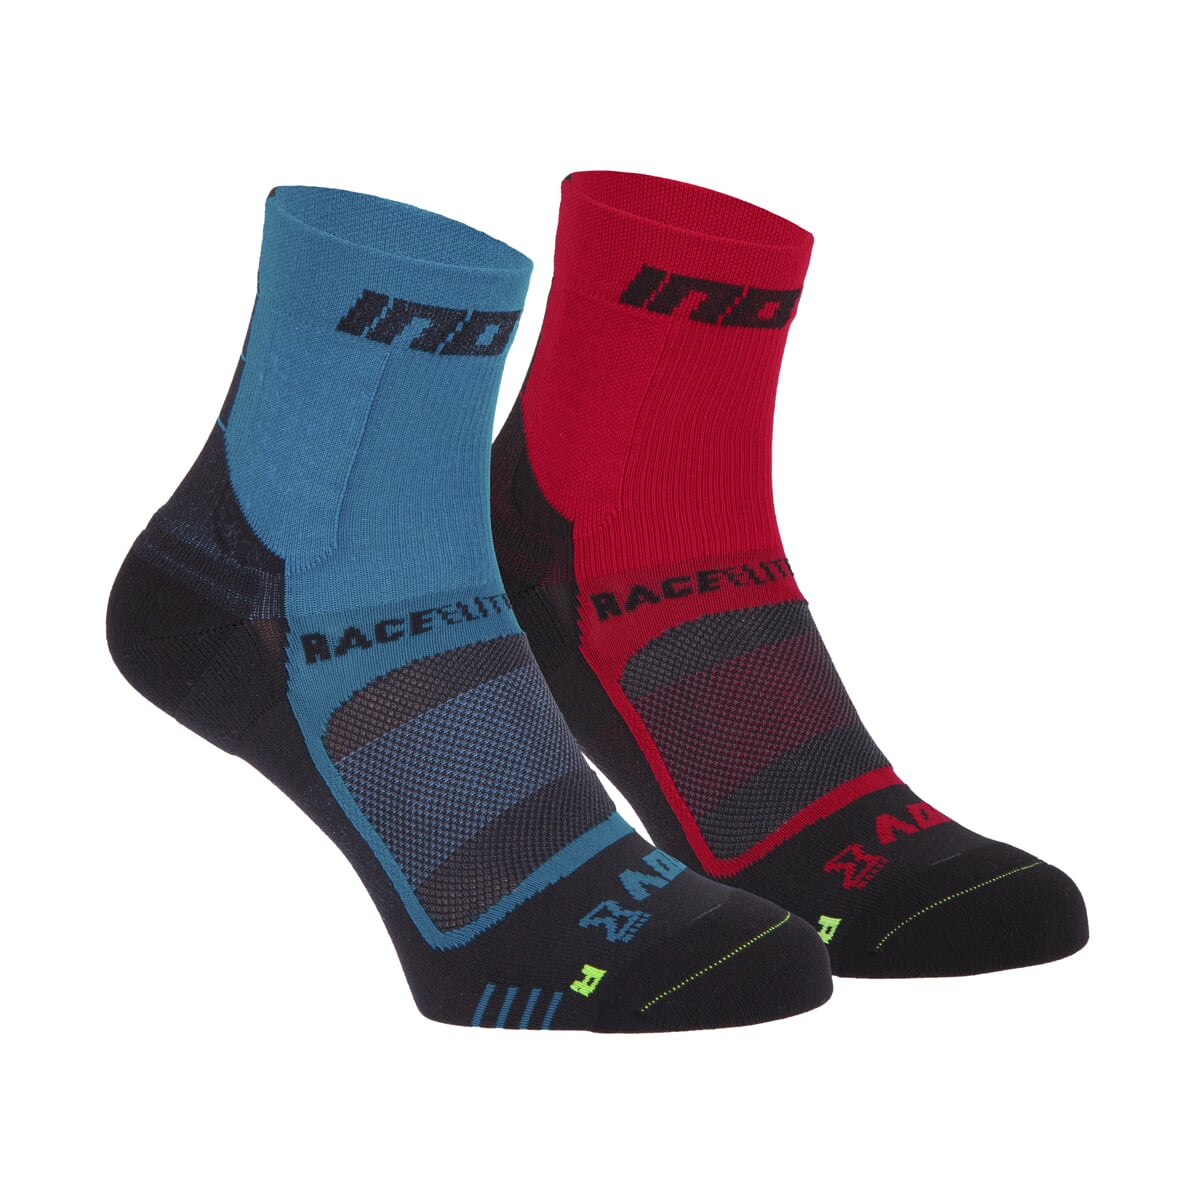 Ponožky Inov-8 Race Elite Pro Sock modrá/červená S